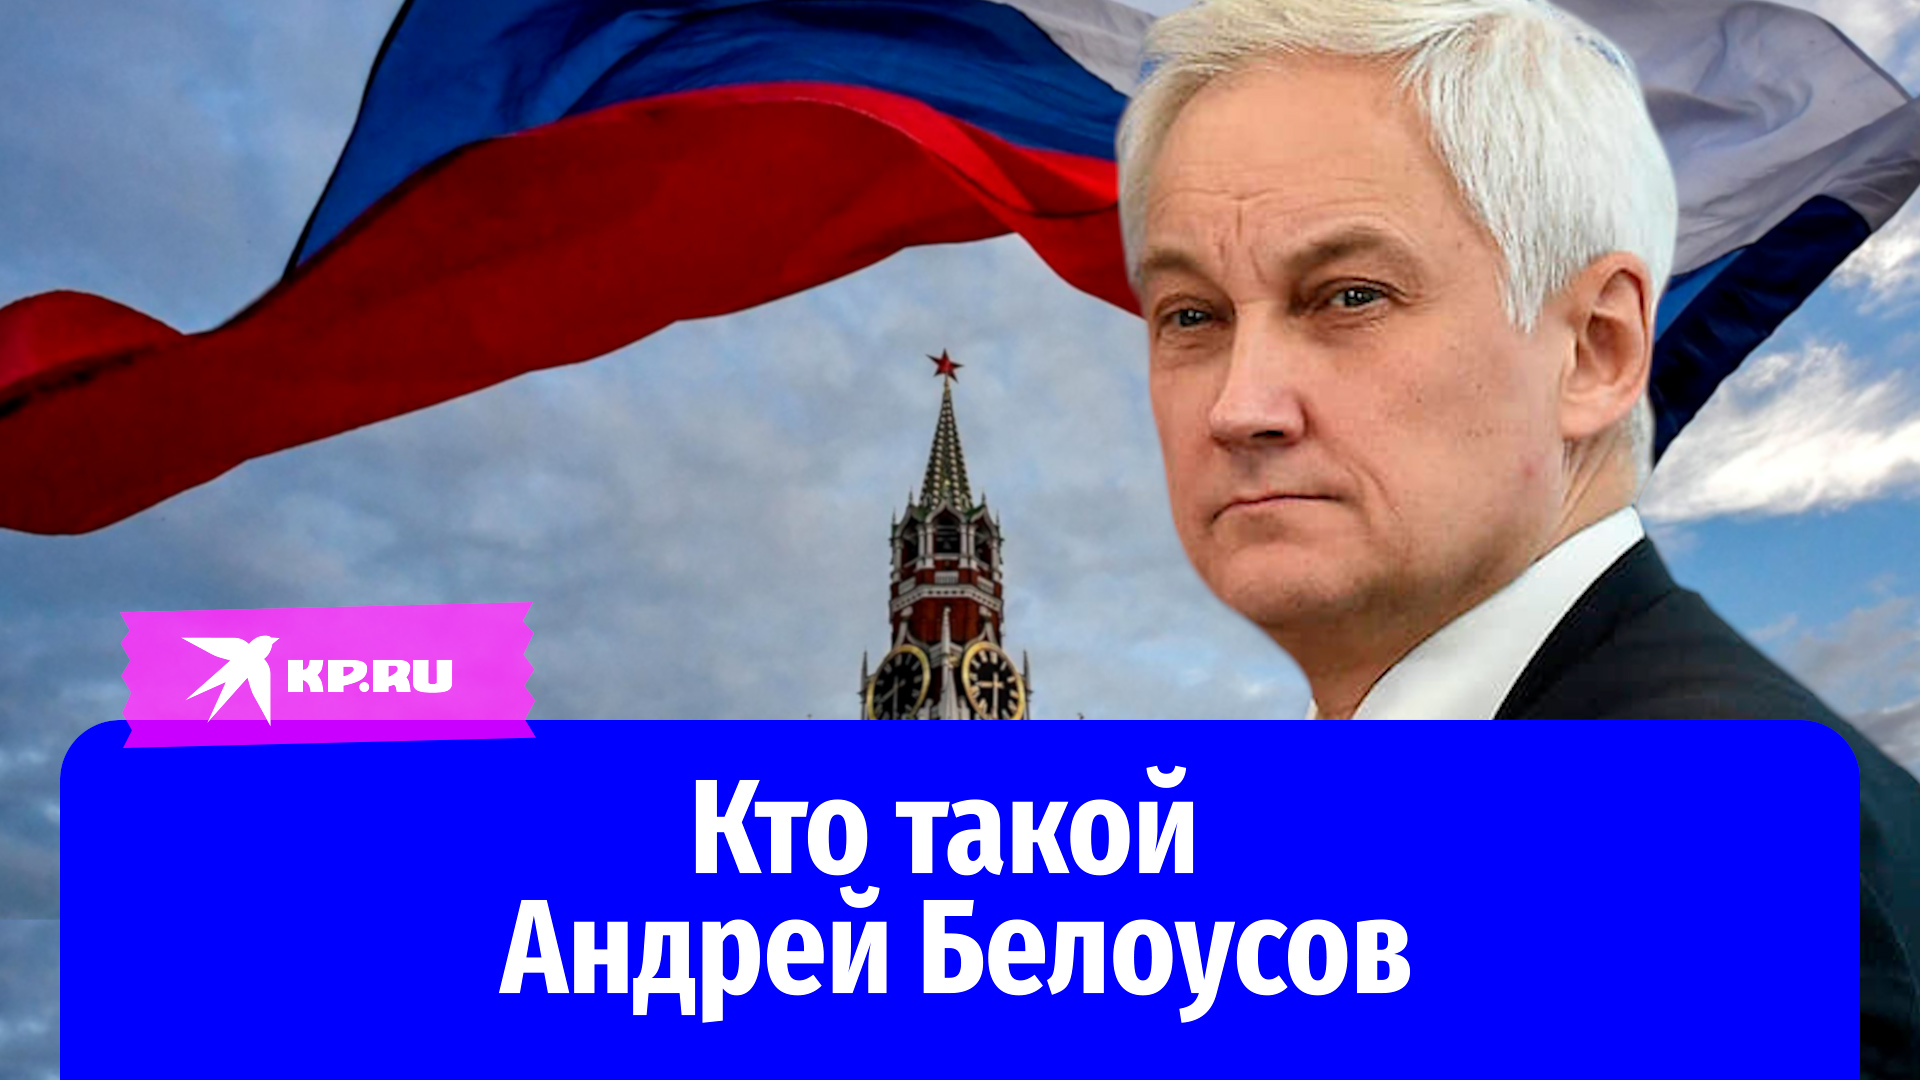 Новым министром обороны РФ может стать экономист Андрей Белоусов